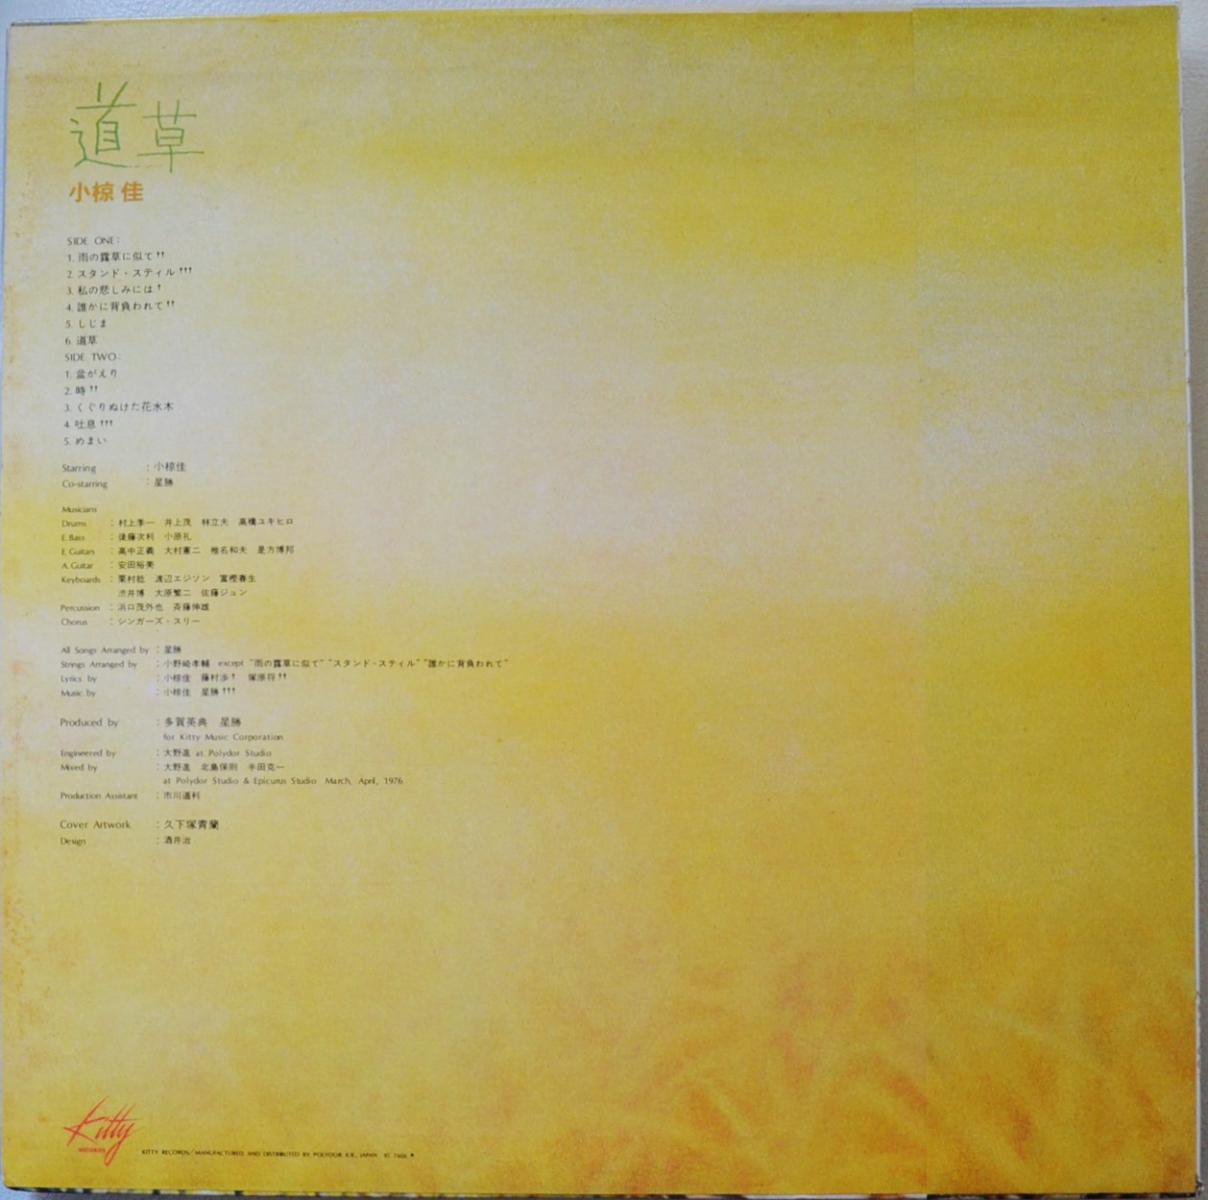 小椋佳 KEI OGURA / 道草 MICHIKUSA (LP) - HIP TANK RECORDS